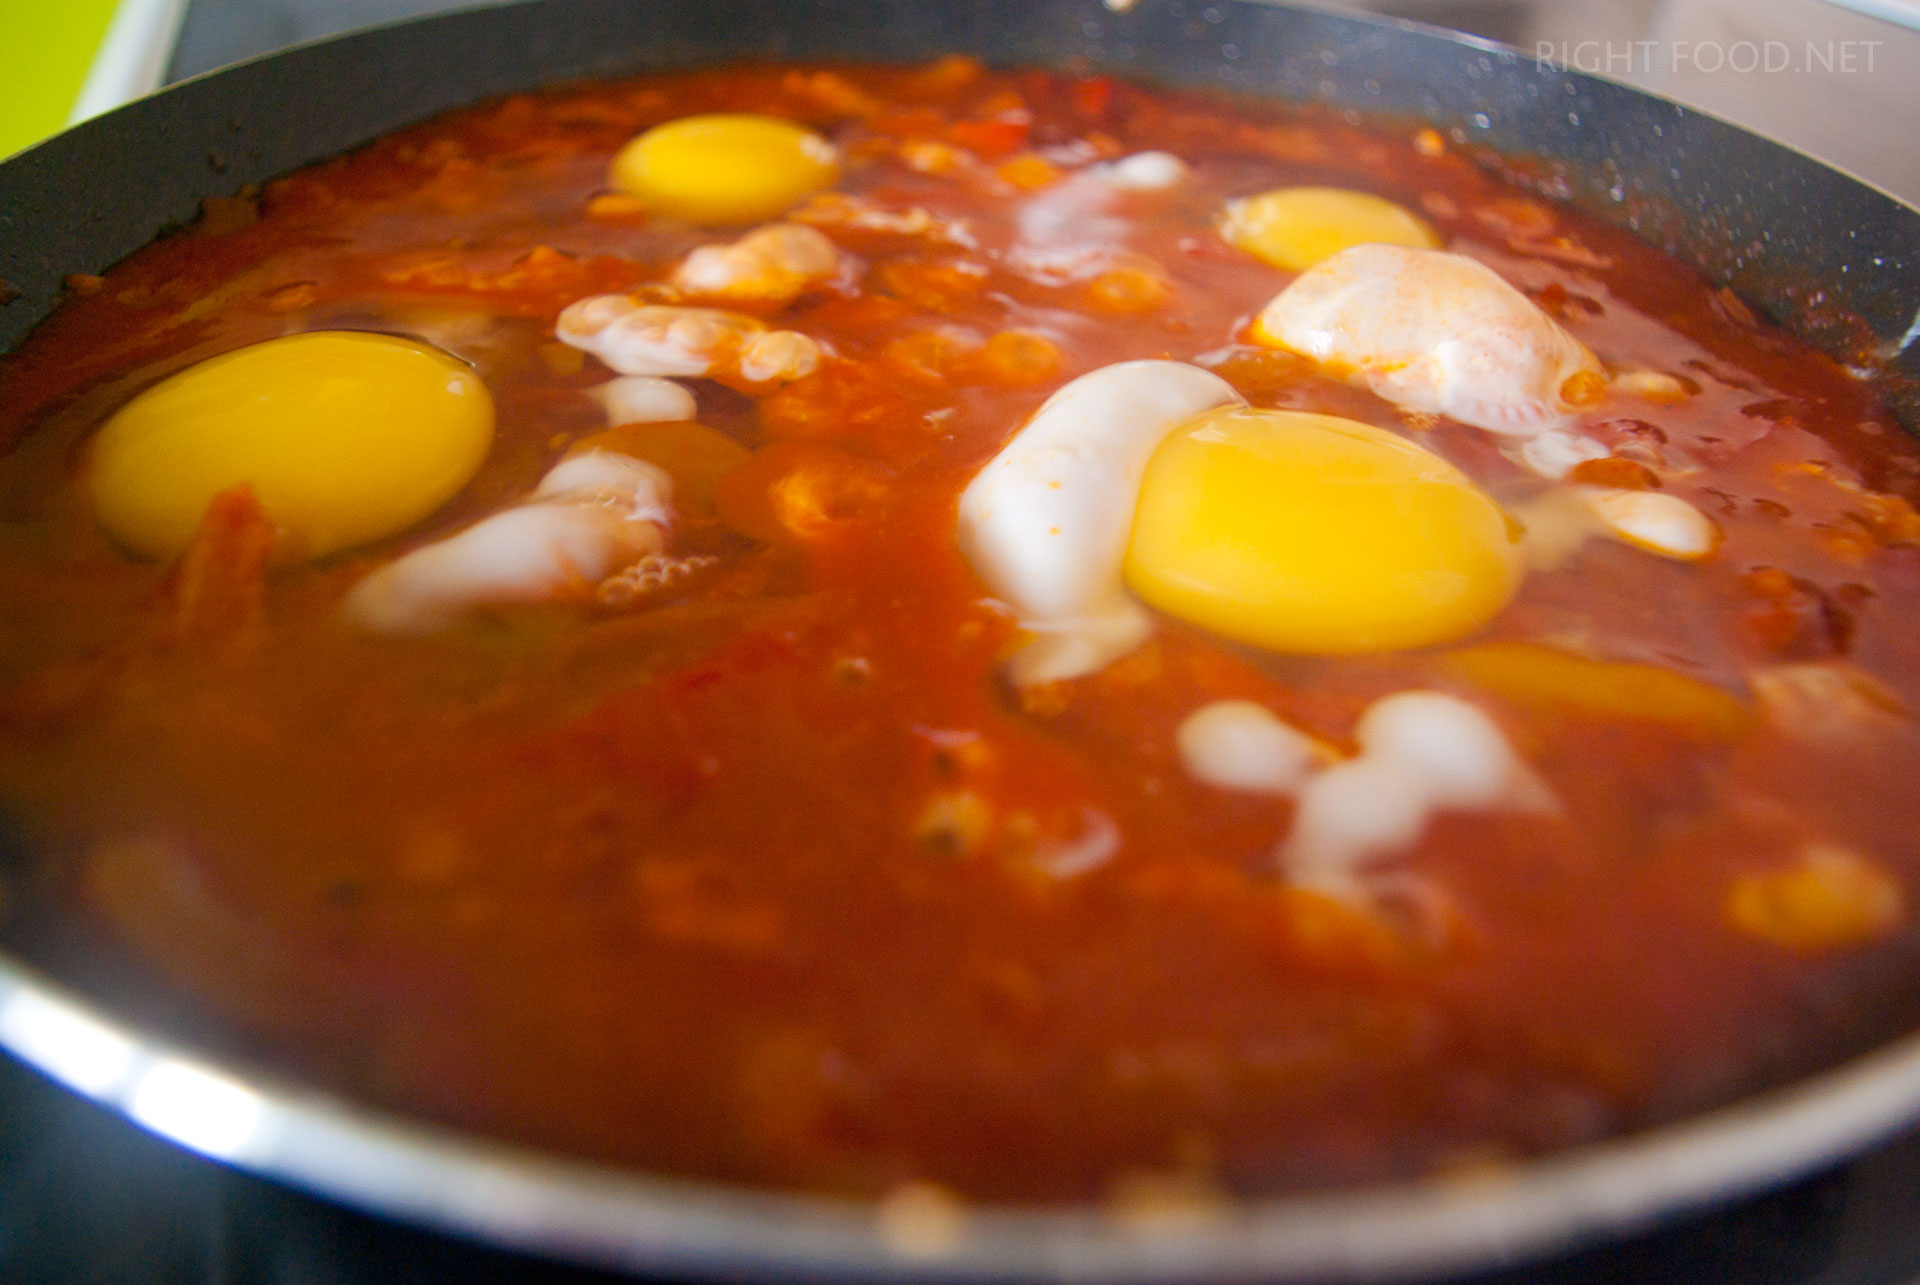 Шакшука - еврейская яичница с помидорами. Пошаговый рецепт с фото. Кулинарный блог Вики Лепинг